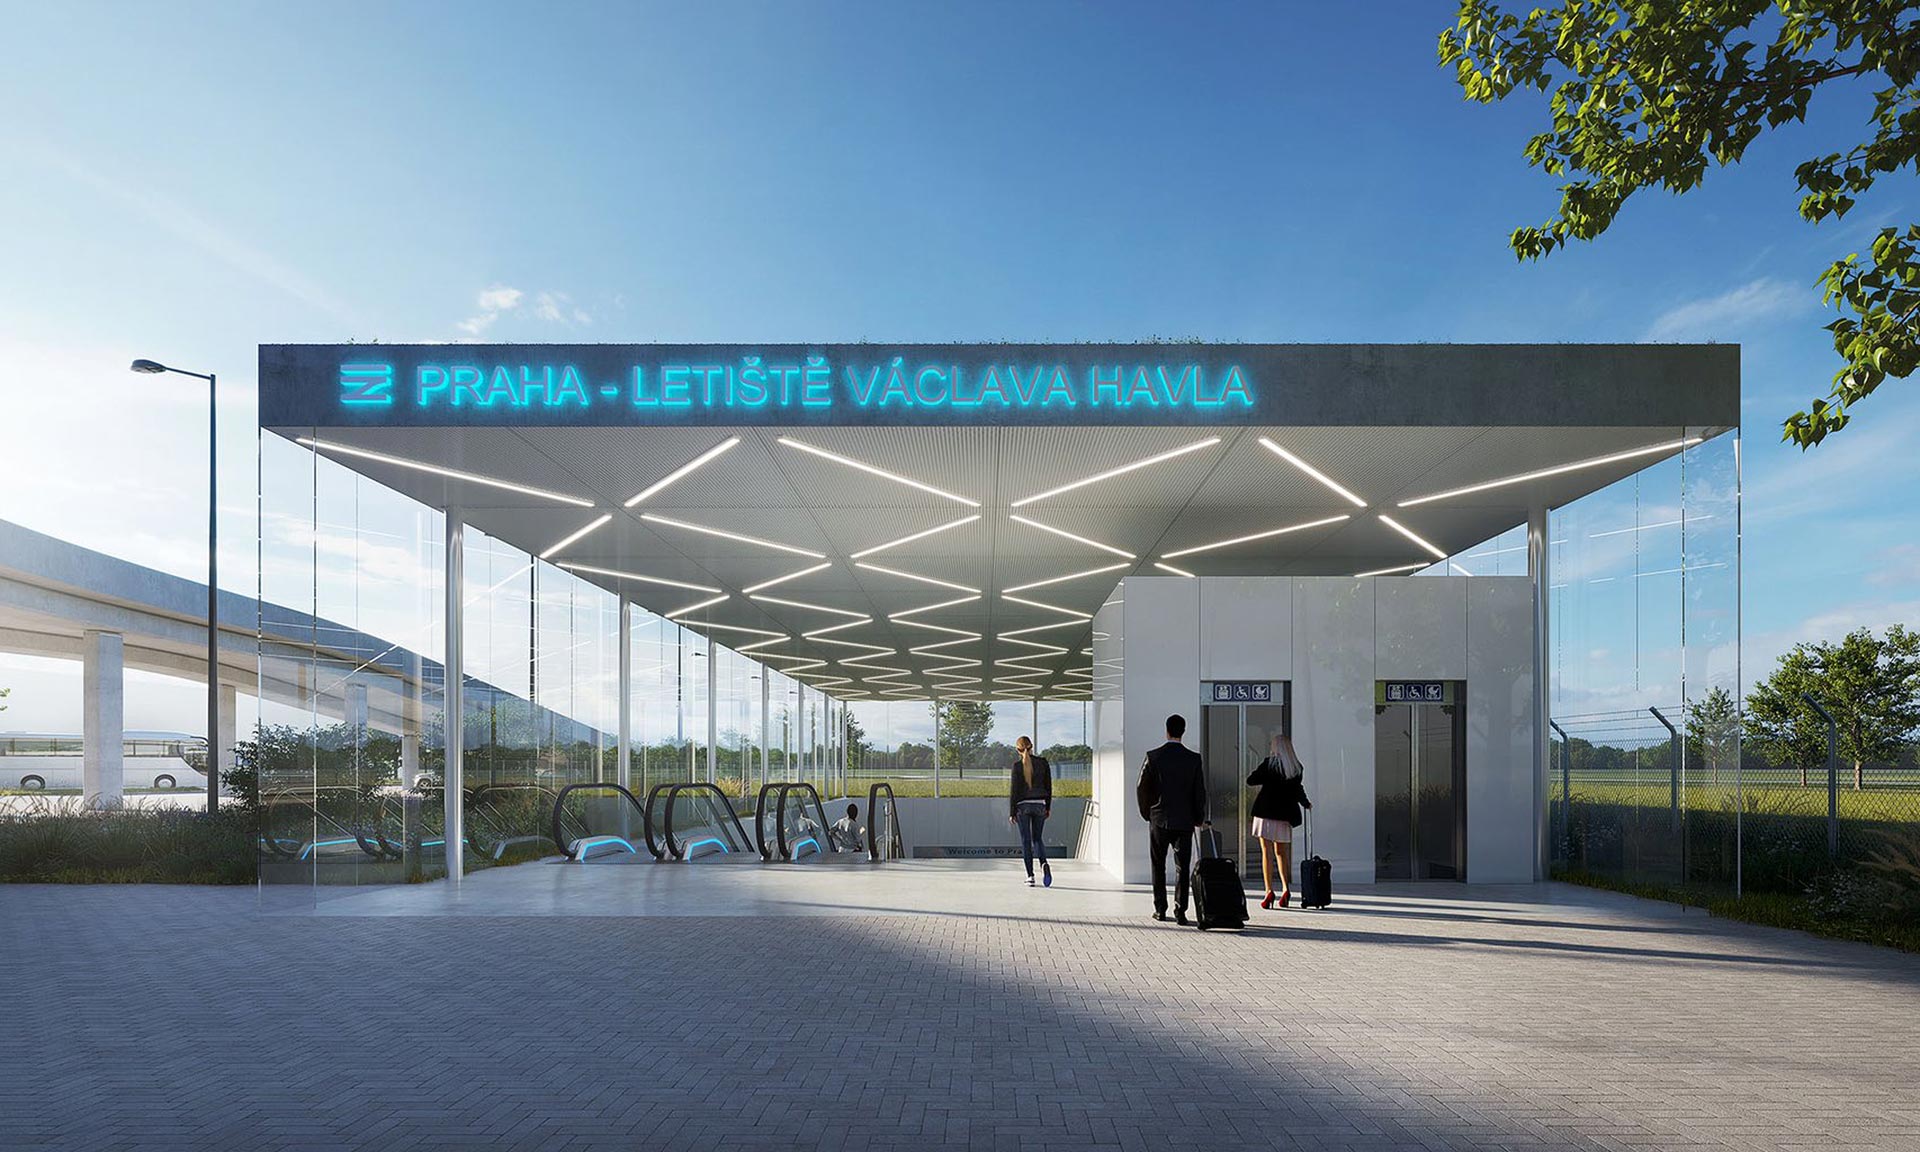 Plánovaná železniční stanice Letiště Václava Havla dostala svou podobu